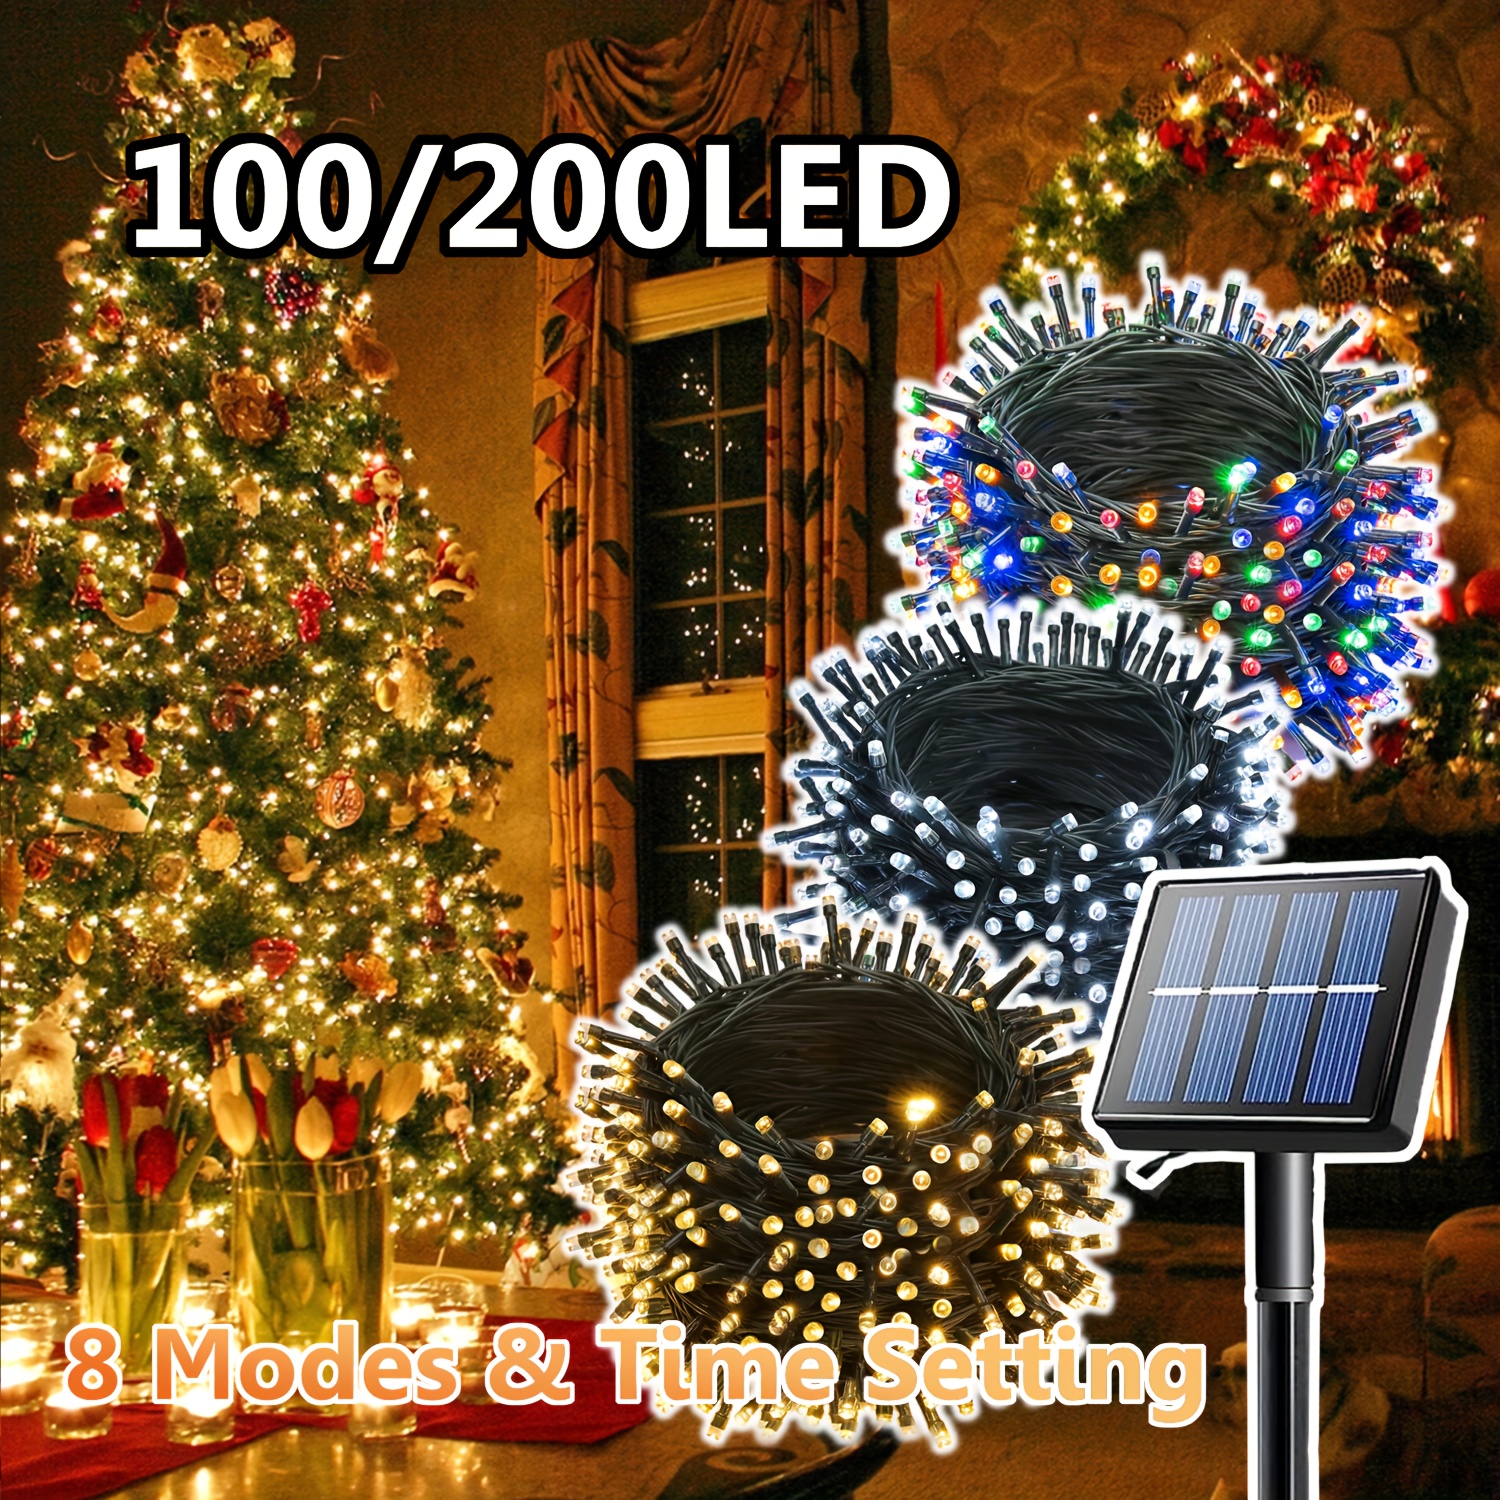 Acheter Guirlande solaire d'extérieur à LED, étanche, 8Modes, guirlande  lumineuse féerique en forme d'abeille, pour noël, vacances, jardin,  clôture, Patio, fête, décoration de la maison, lampe de nuit